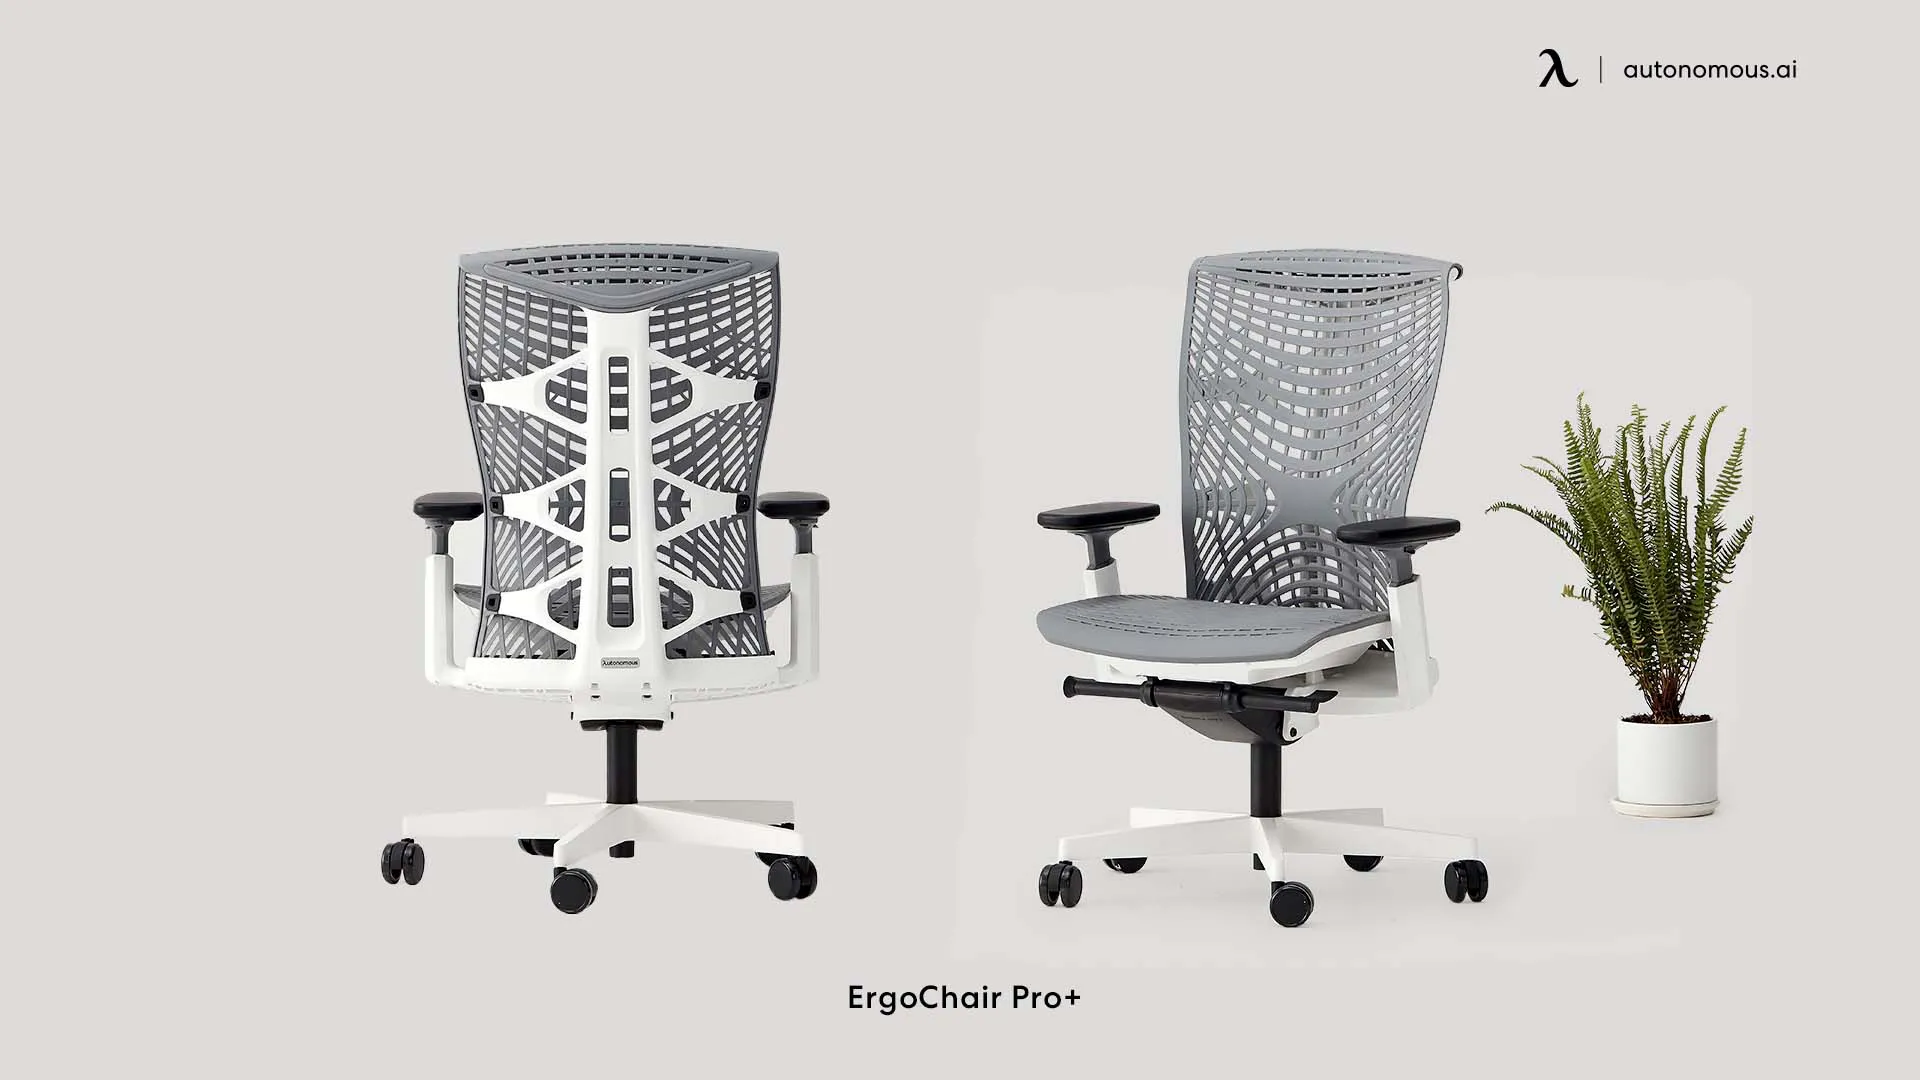 ErgoChair Pro+ business office chair